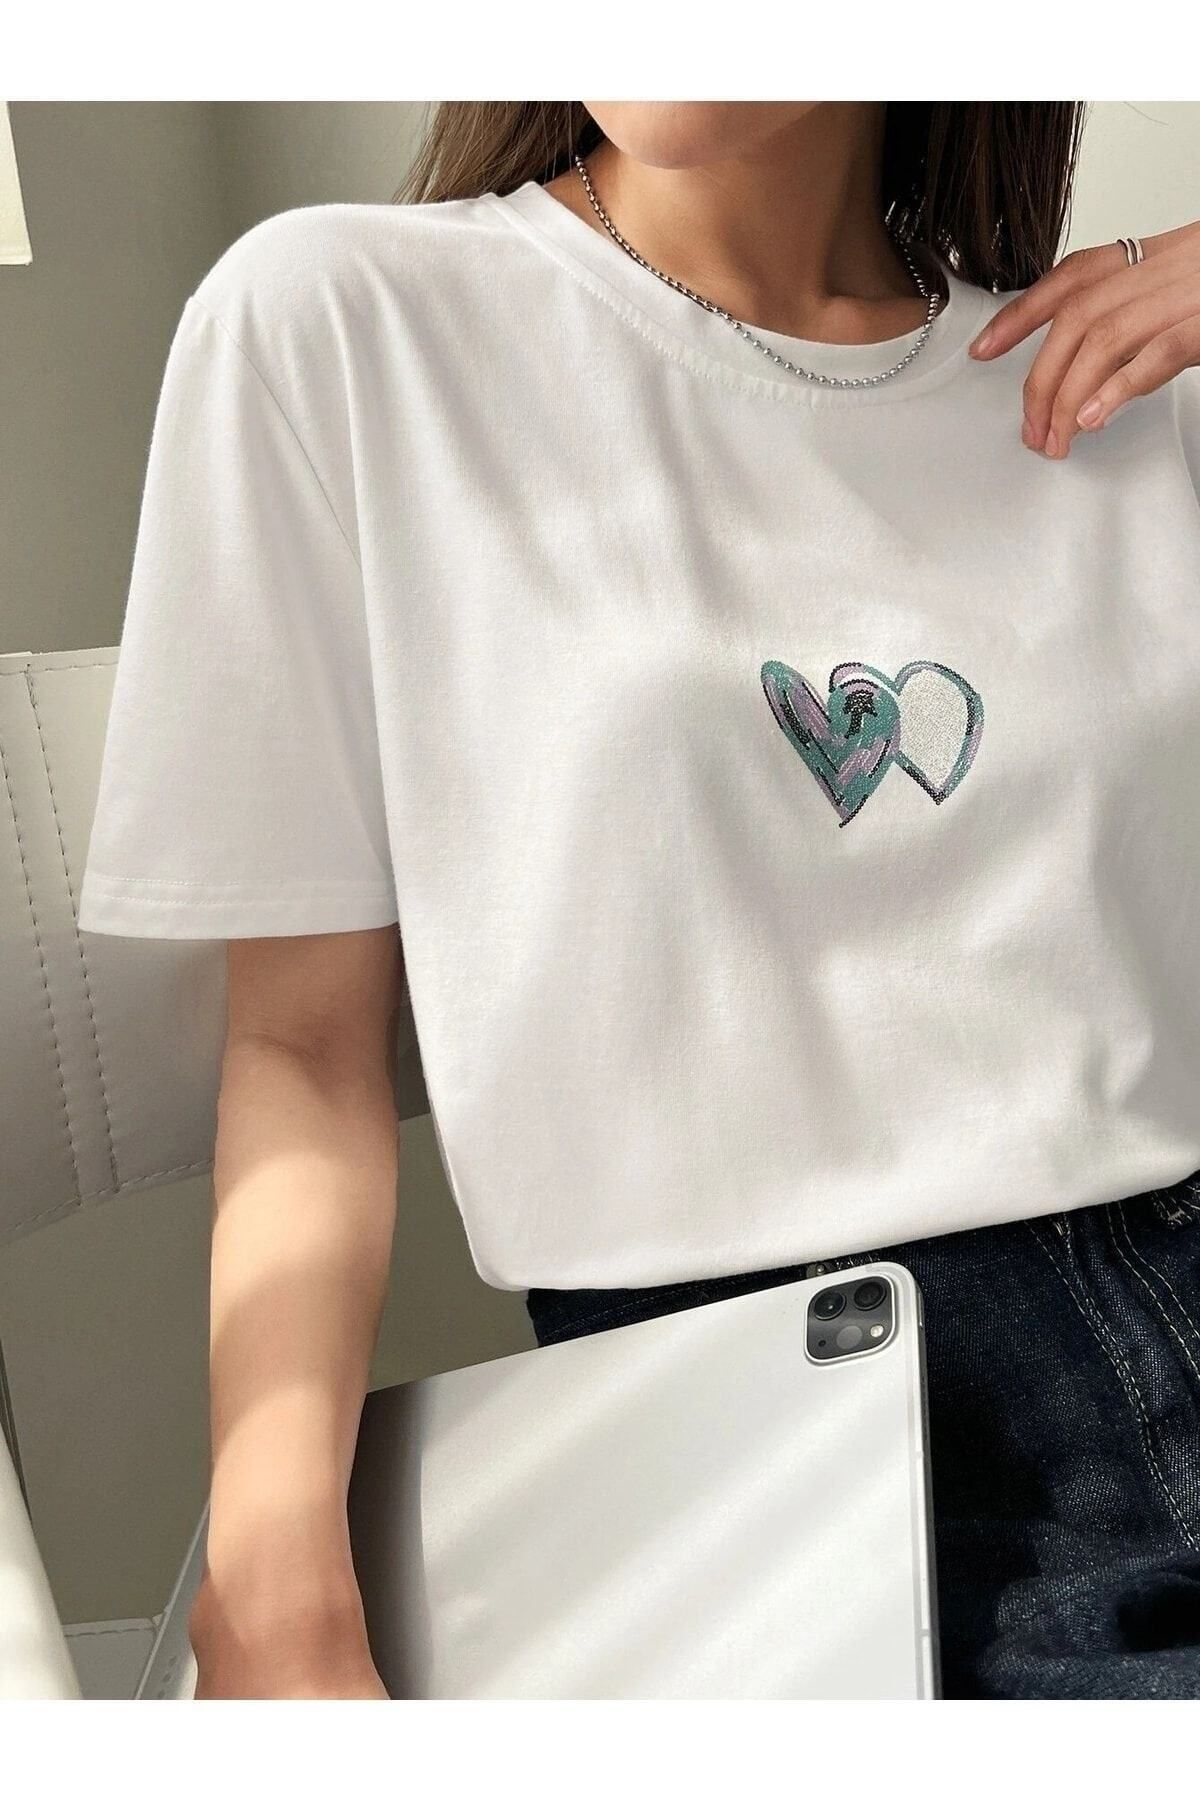 PALPİTO Kadın Beyaz Çift Kalp Baskılı Oversize T-Shirt